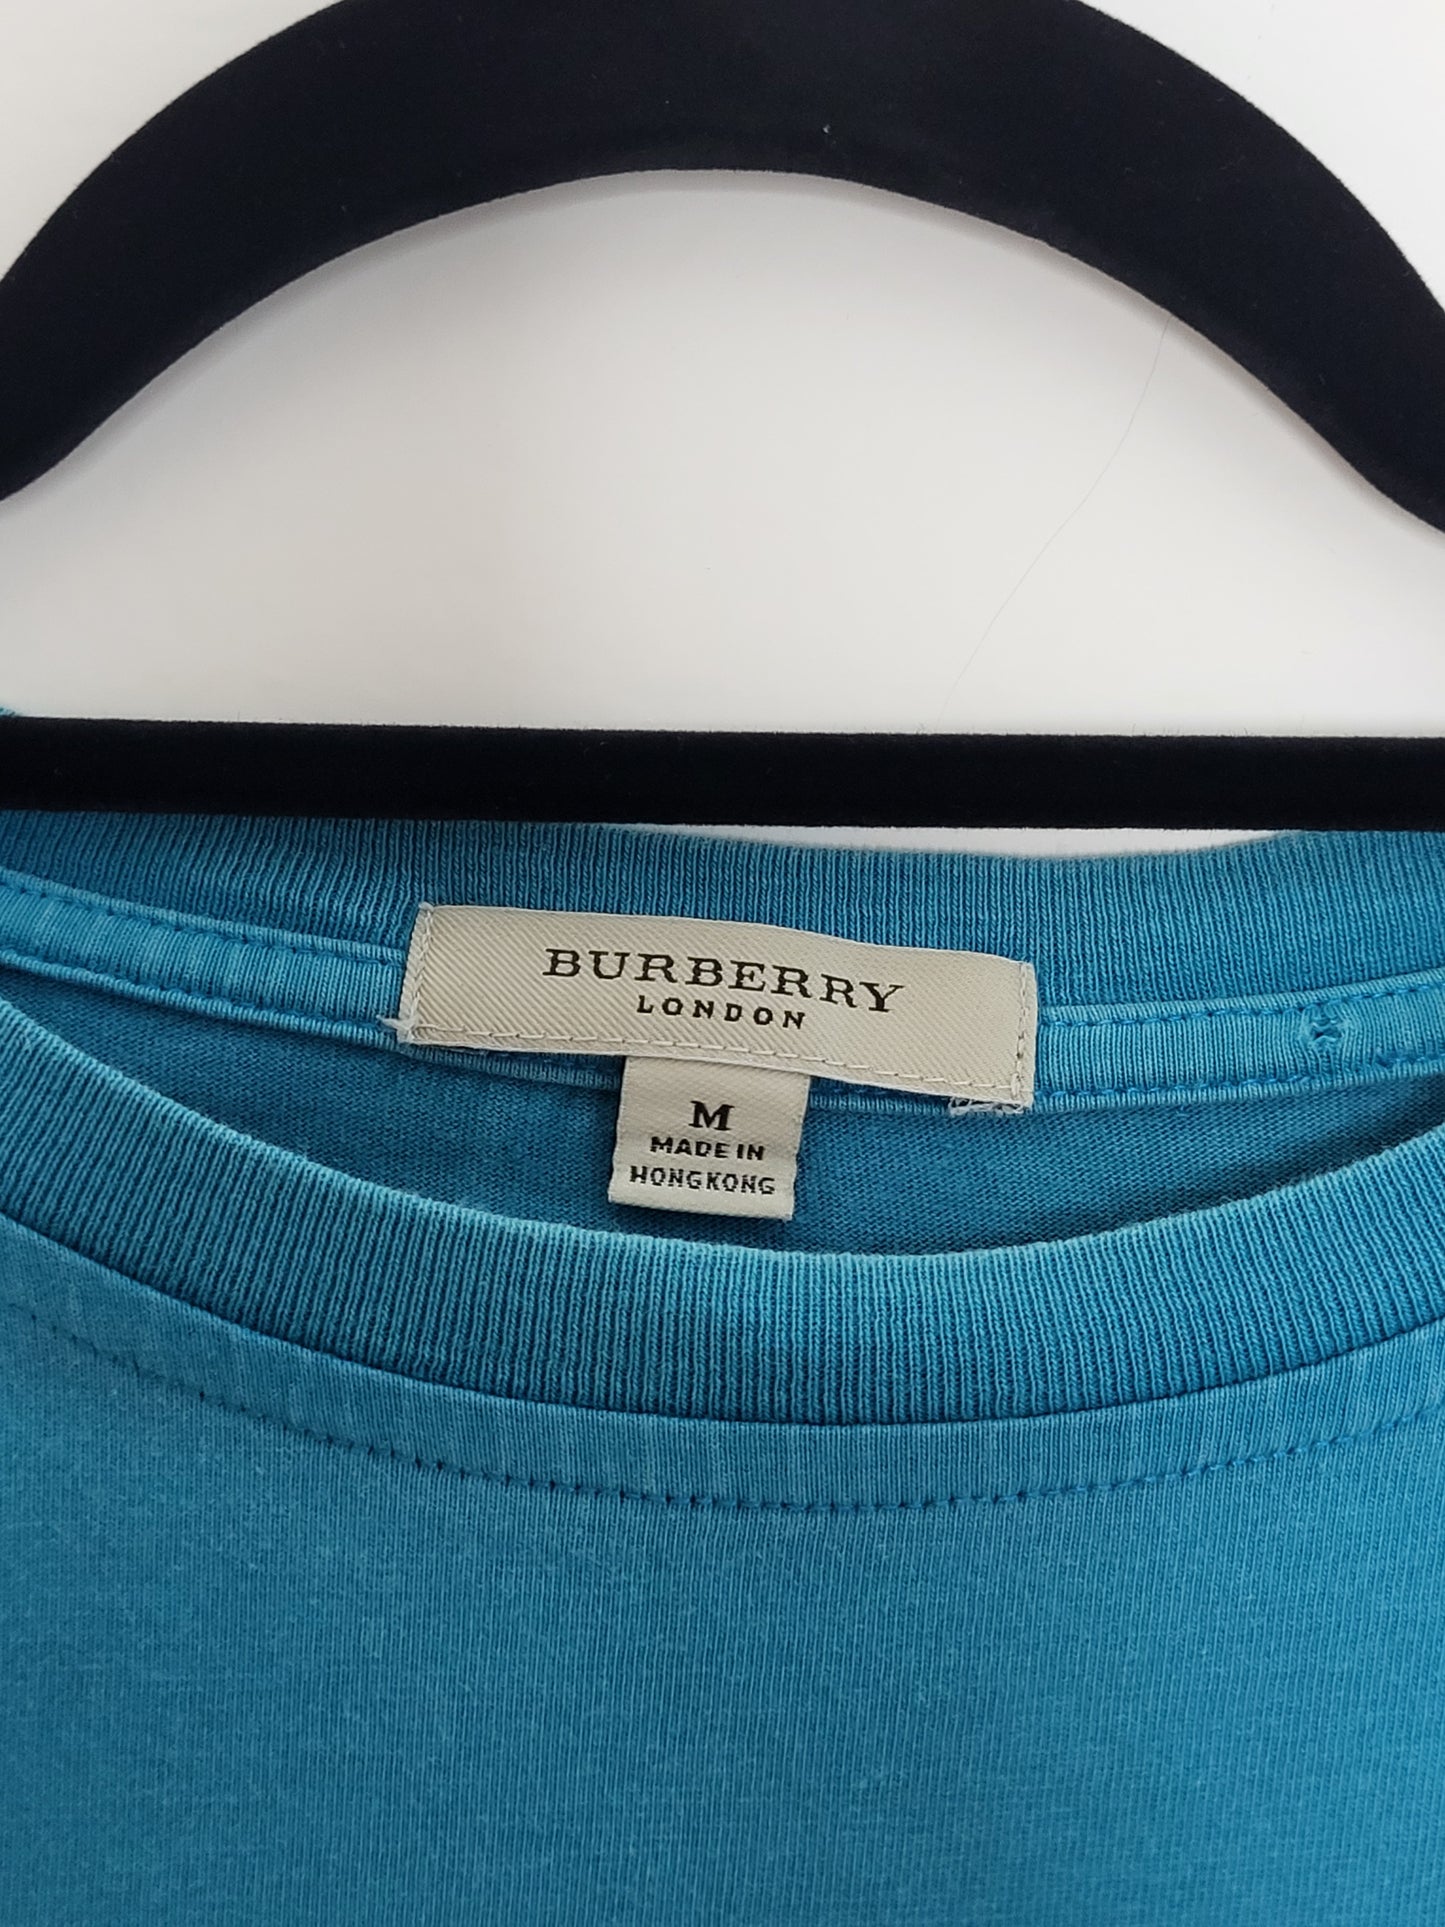 BURBERRY - T-Shirt - Klassisch - Türkis - Herren - M